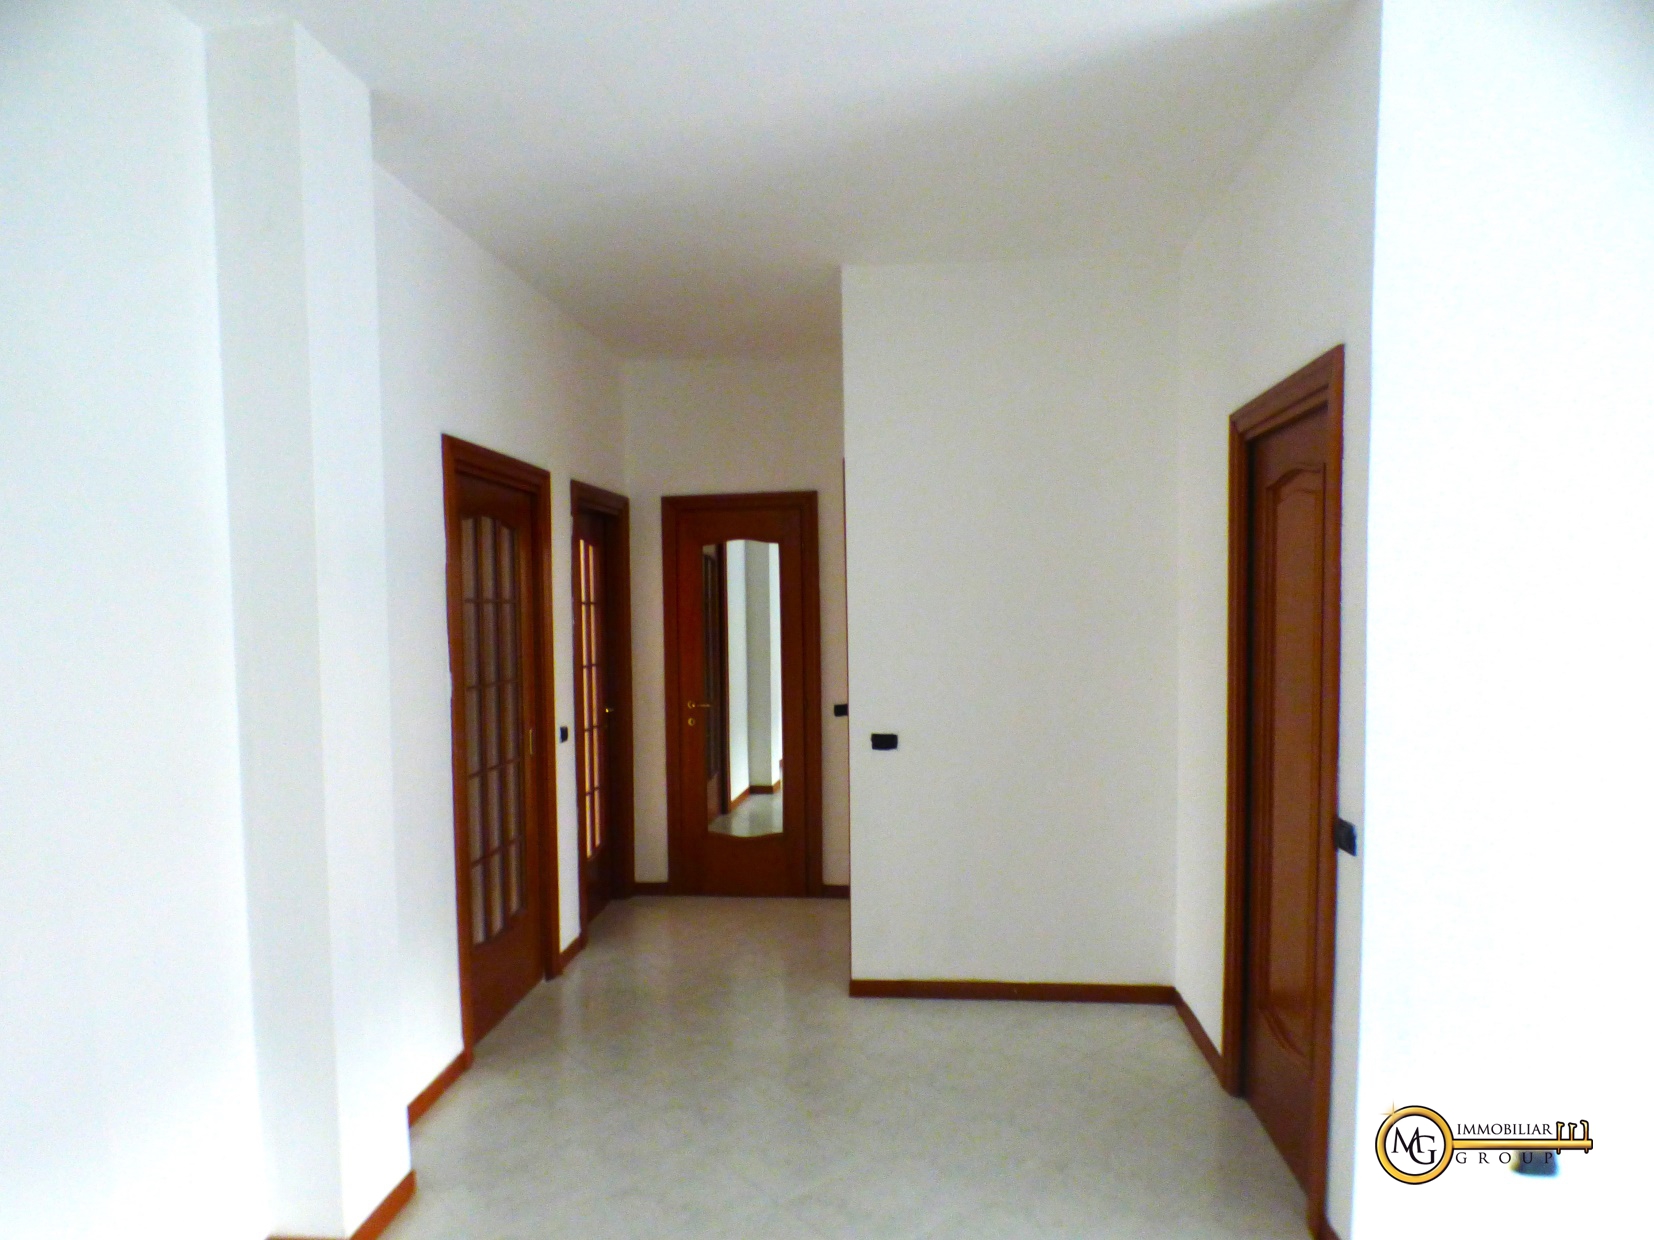 Appartamento in vendita a Vignate, 3 locali, prezzo € 179.000 | PortaleAgenzieImmobiliari.it